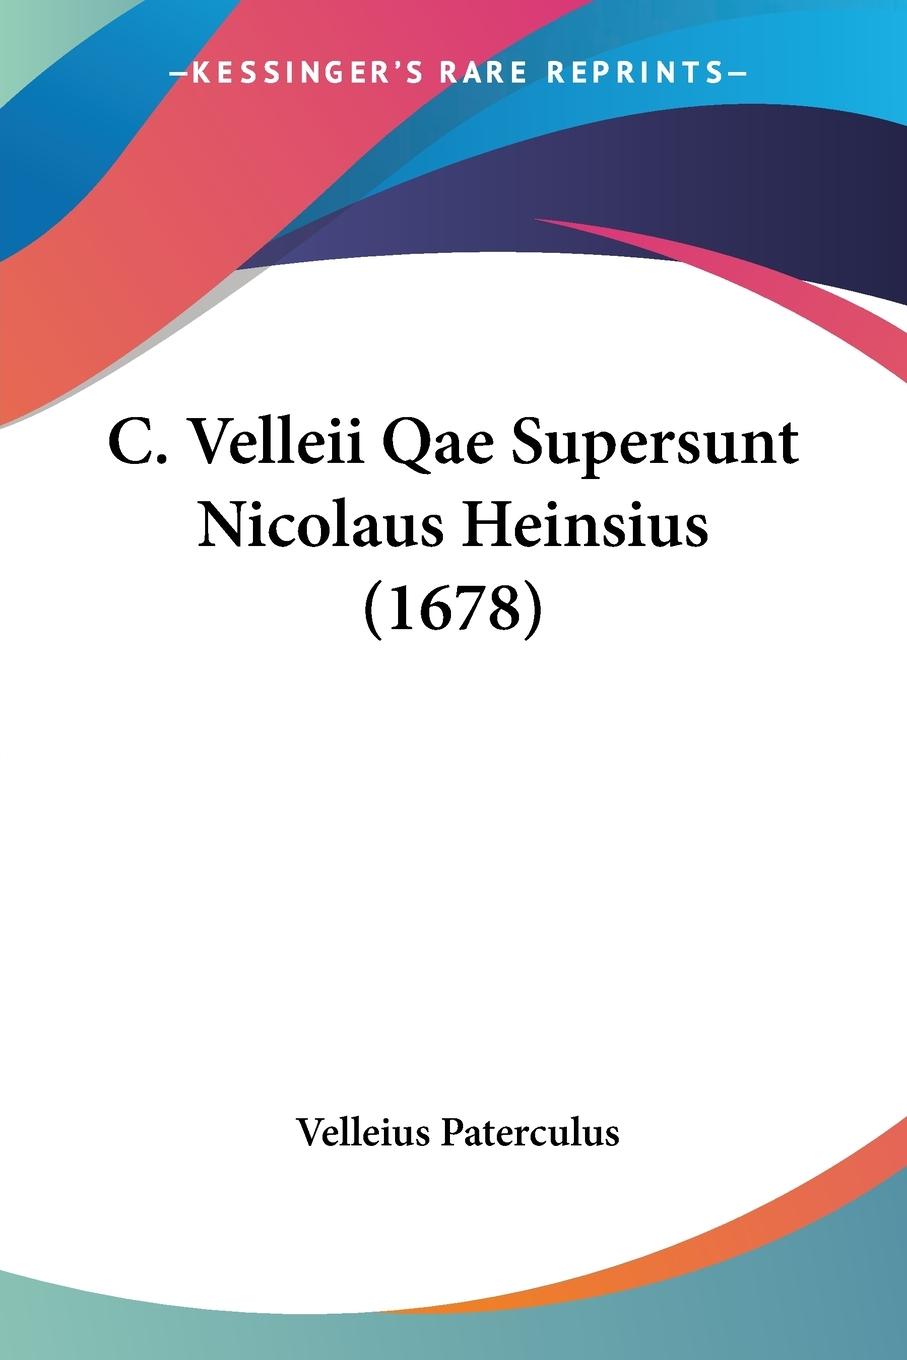 C. Velleii Qae Supersunt Nicolaus Heinsius (1678) - Paterculus, Velleius